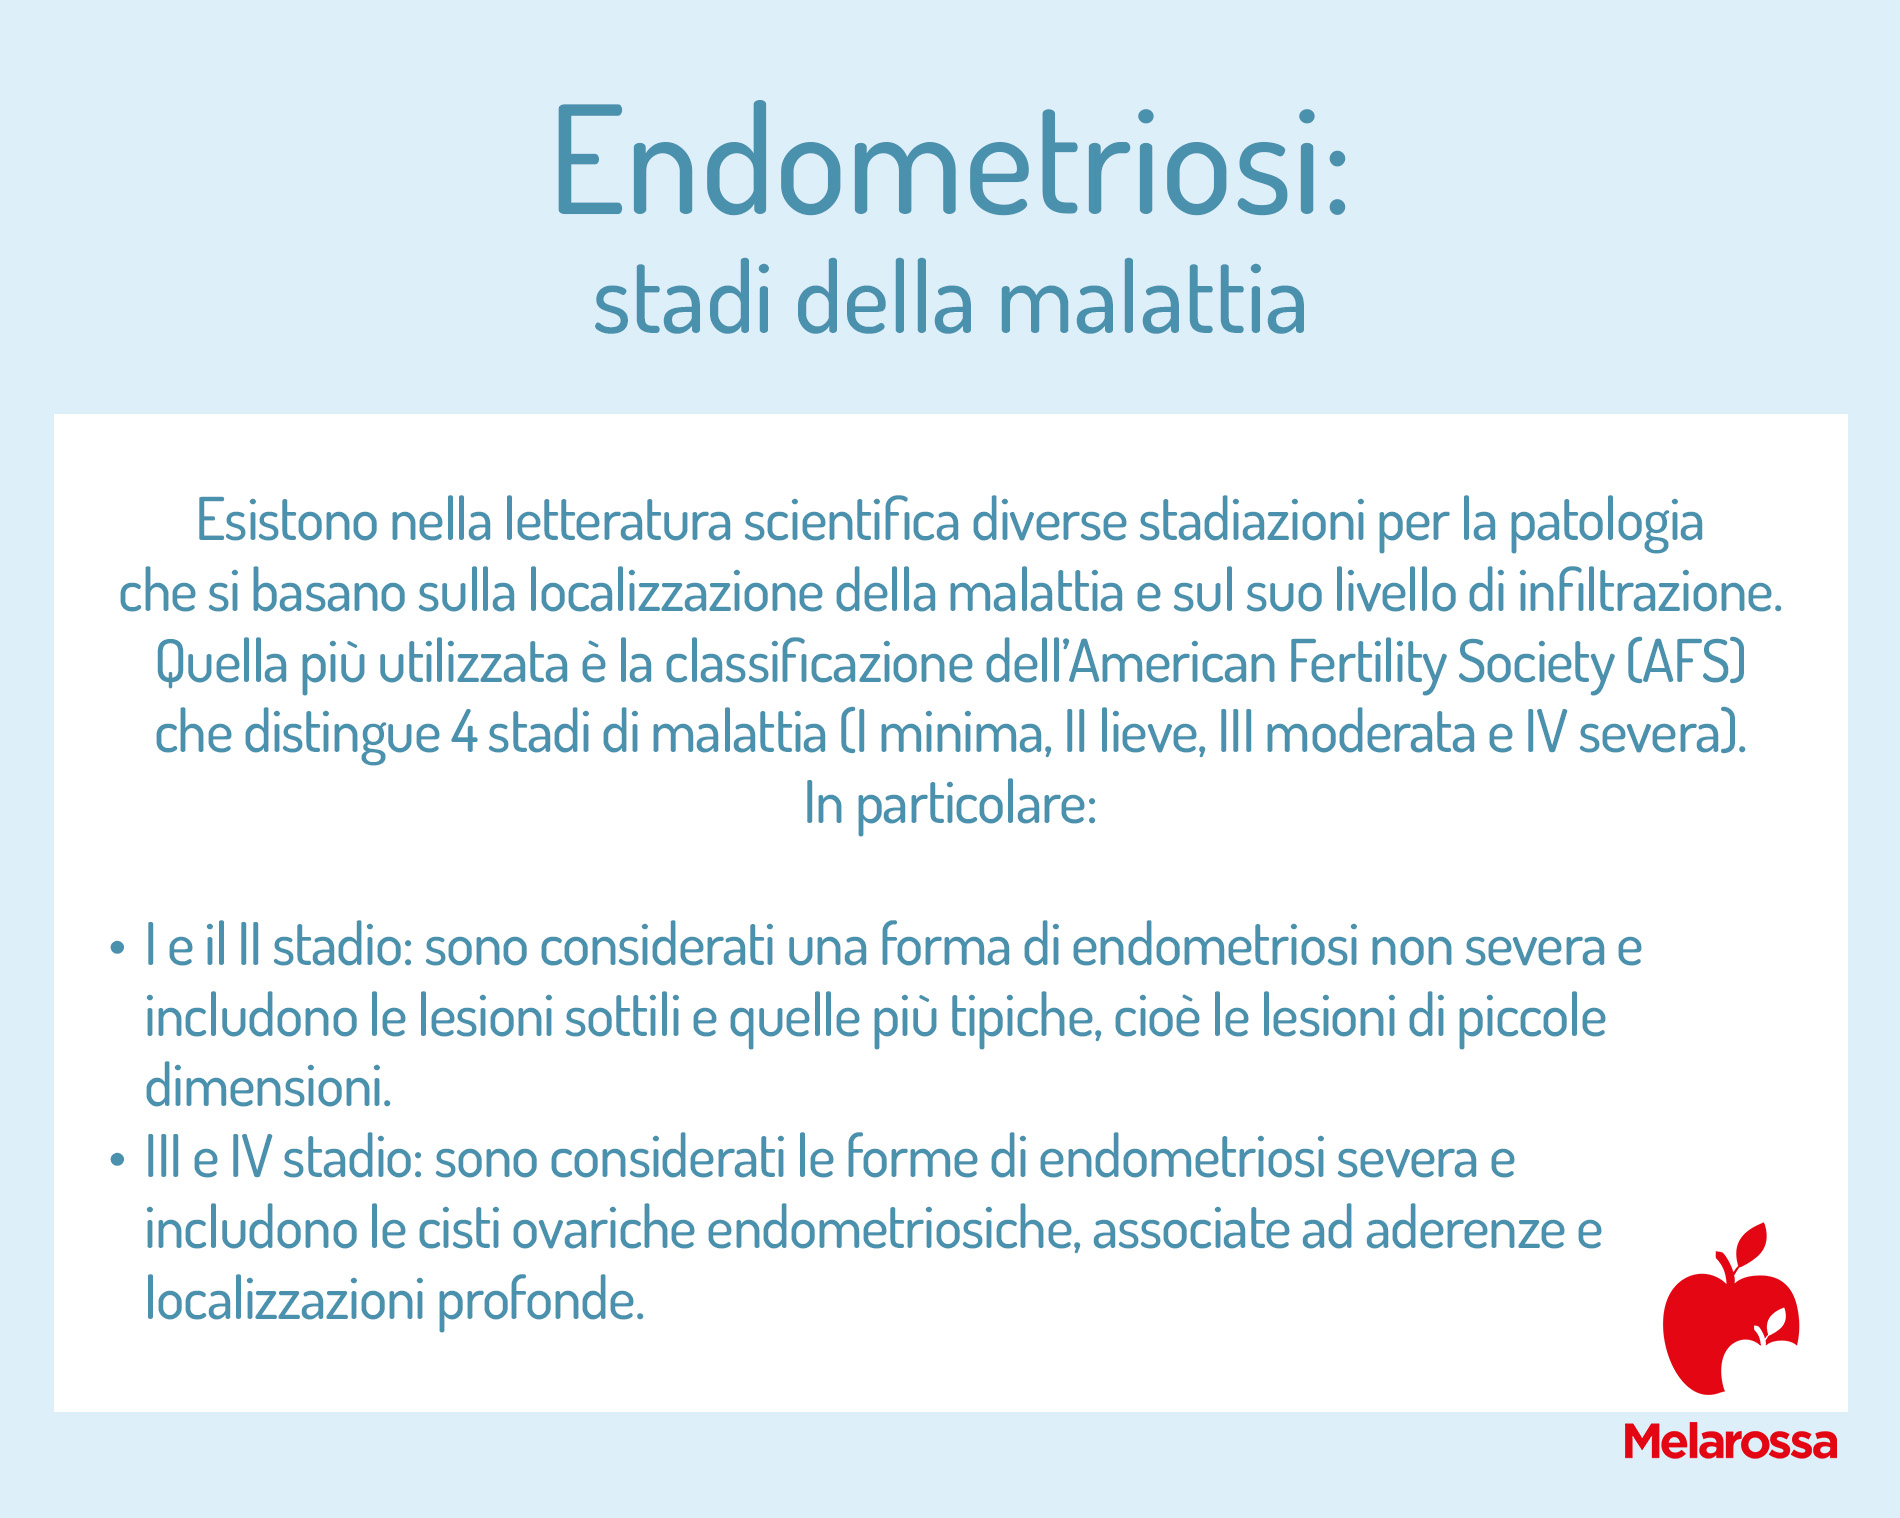 endometriosi: stadi della malattia 